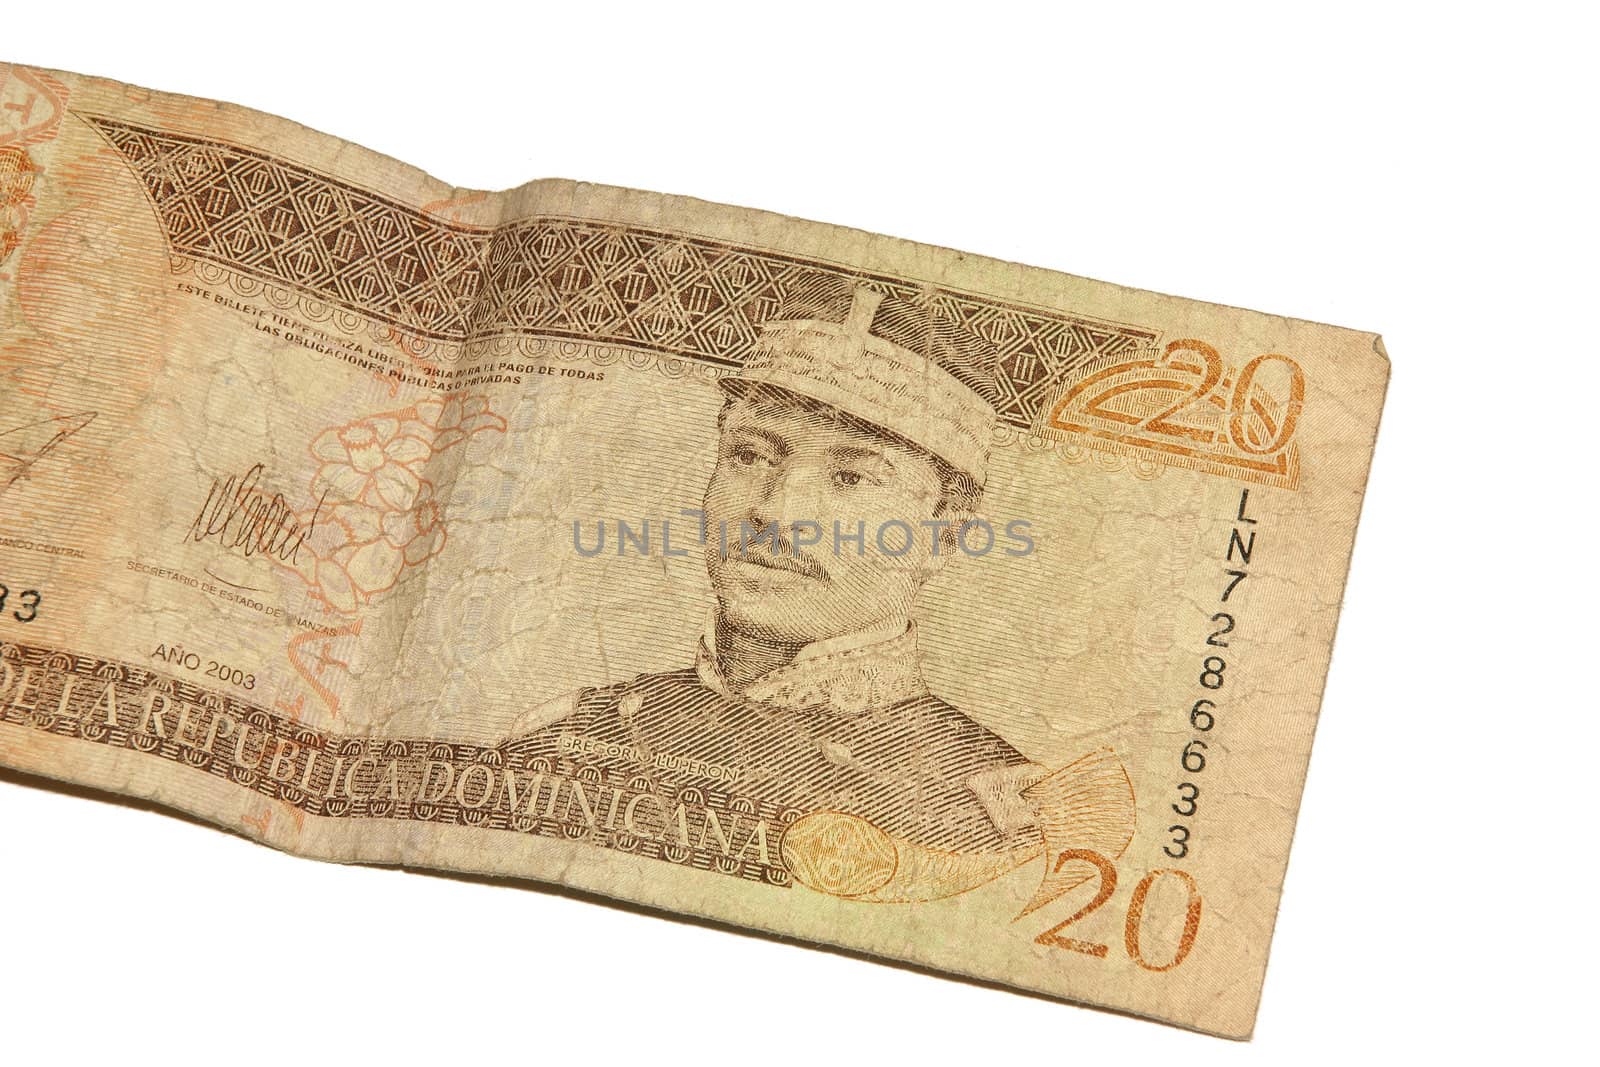 A twenty Dominican peso bill